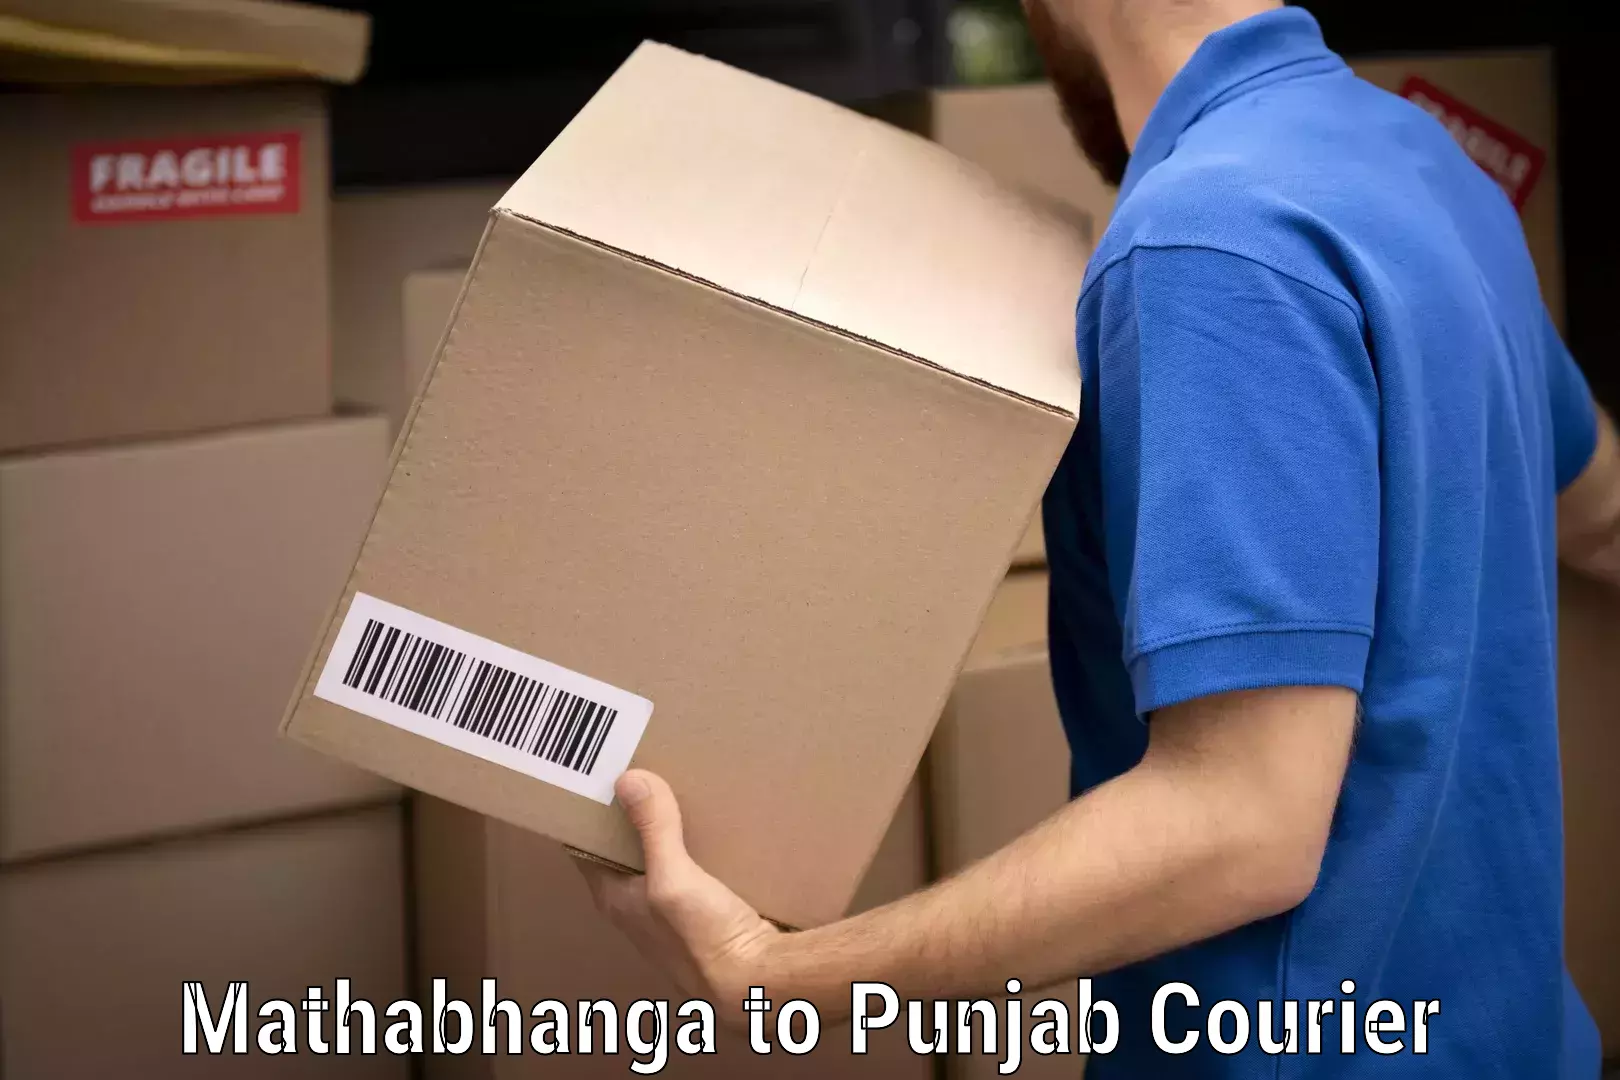 Professional packing services Mathabhanga to Punjab